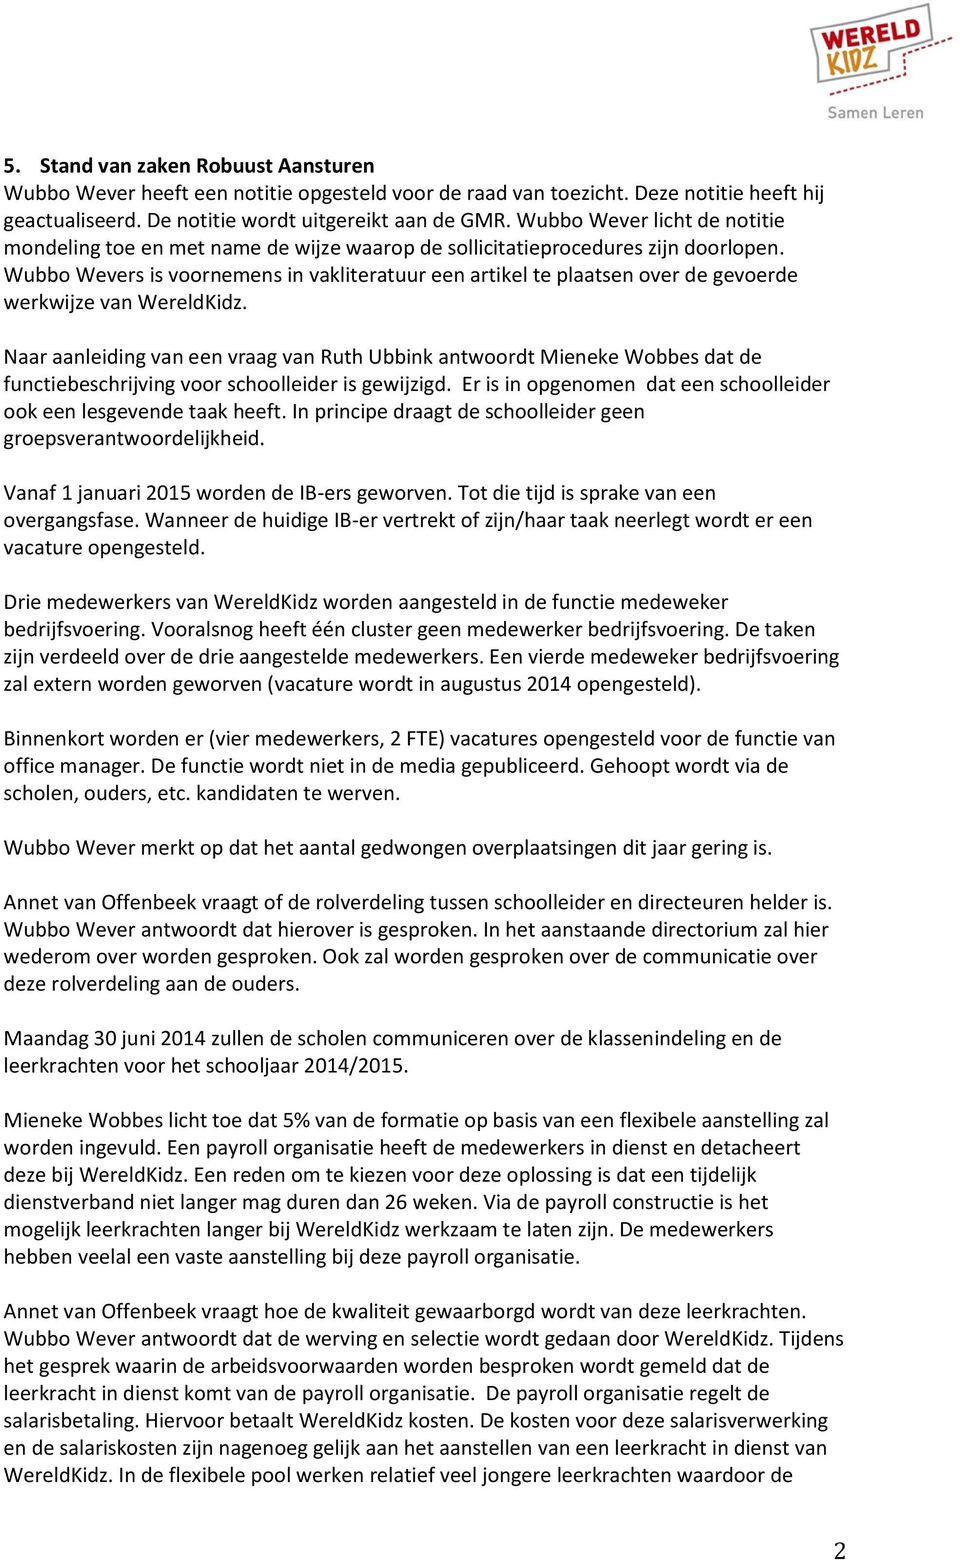 Wubbo Wevers is voornemens in vakliteratuur een artikel te plaatsen over de gevoerde werkwijze van WereldKidz.